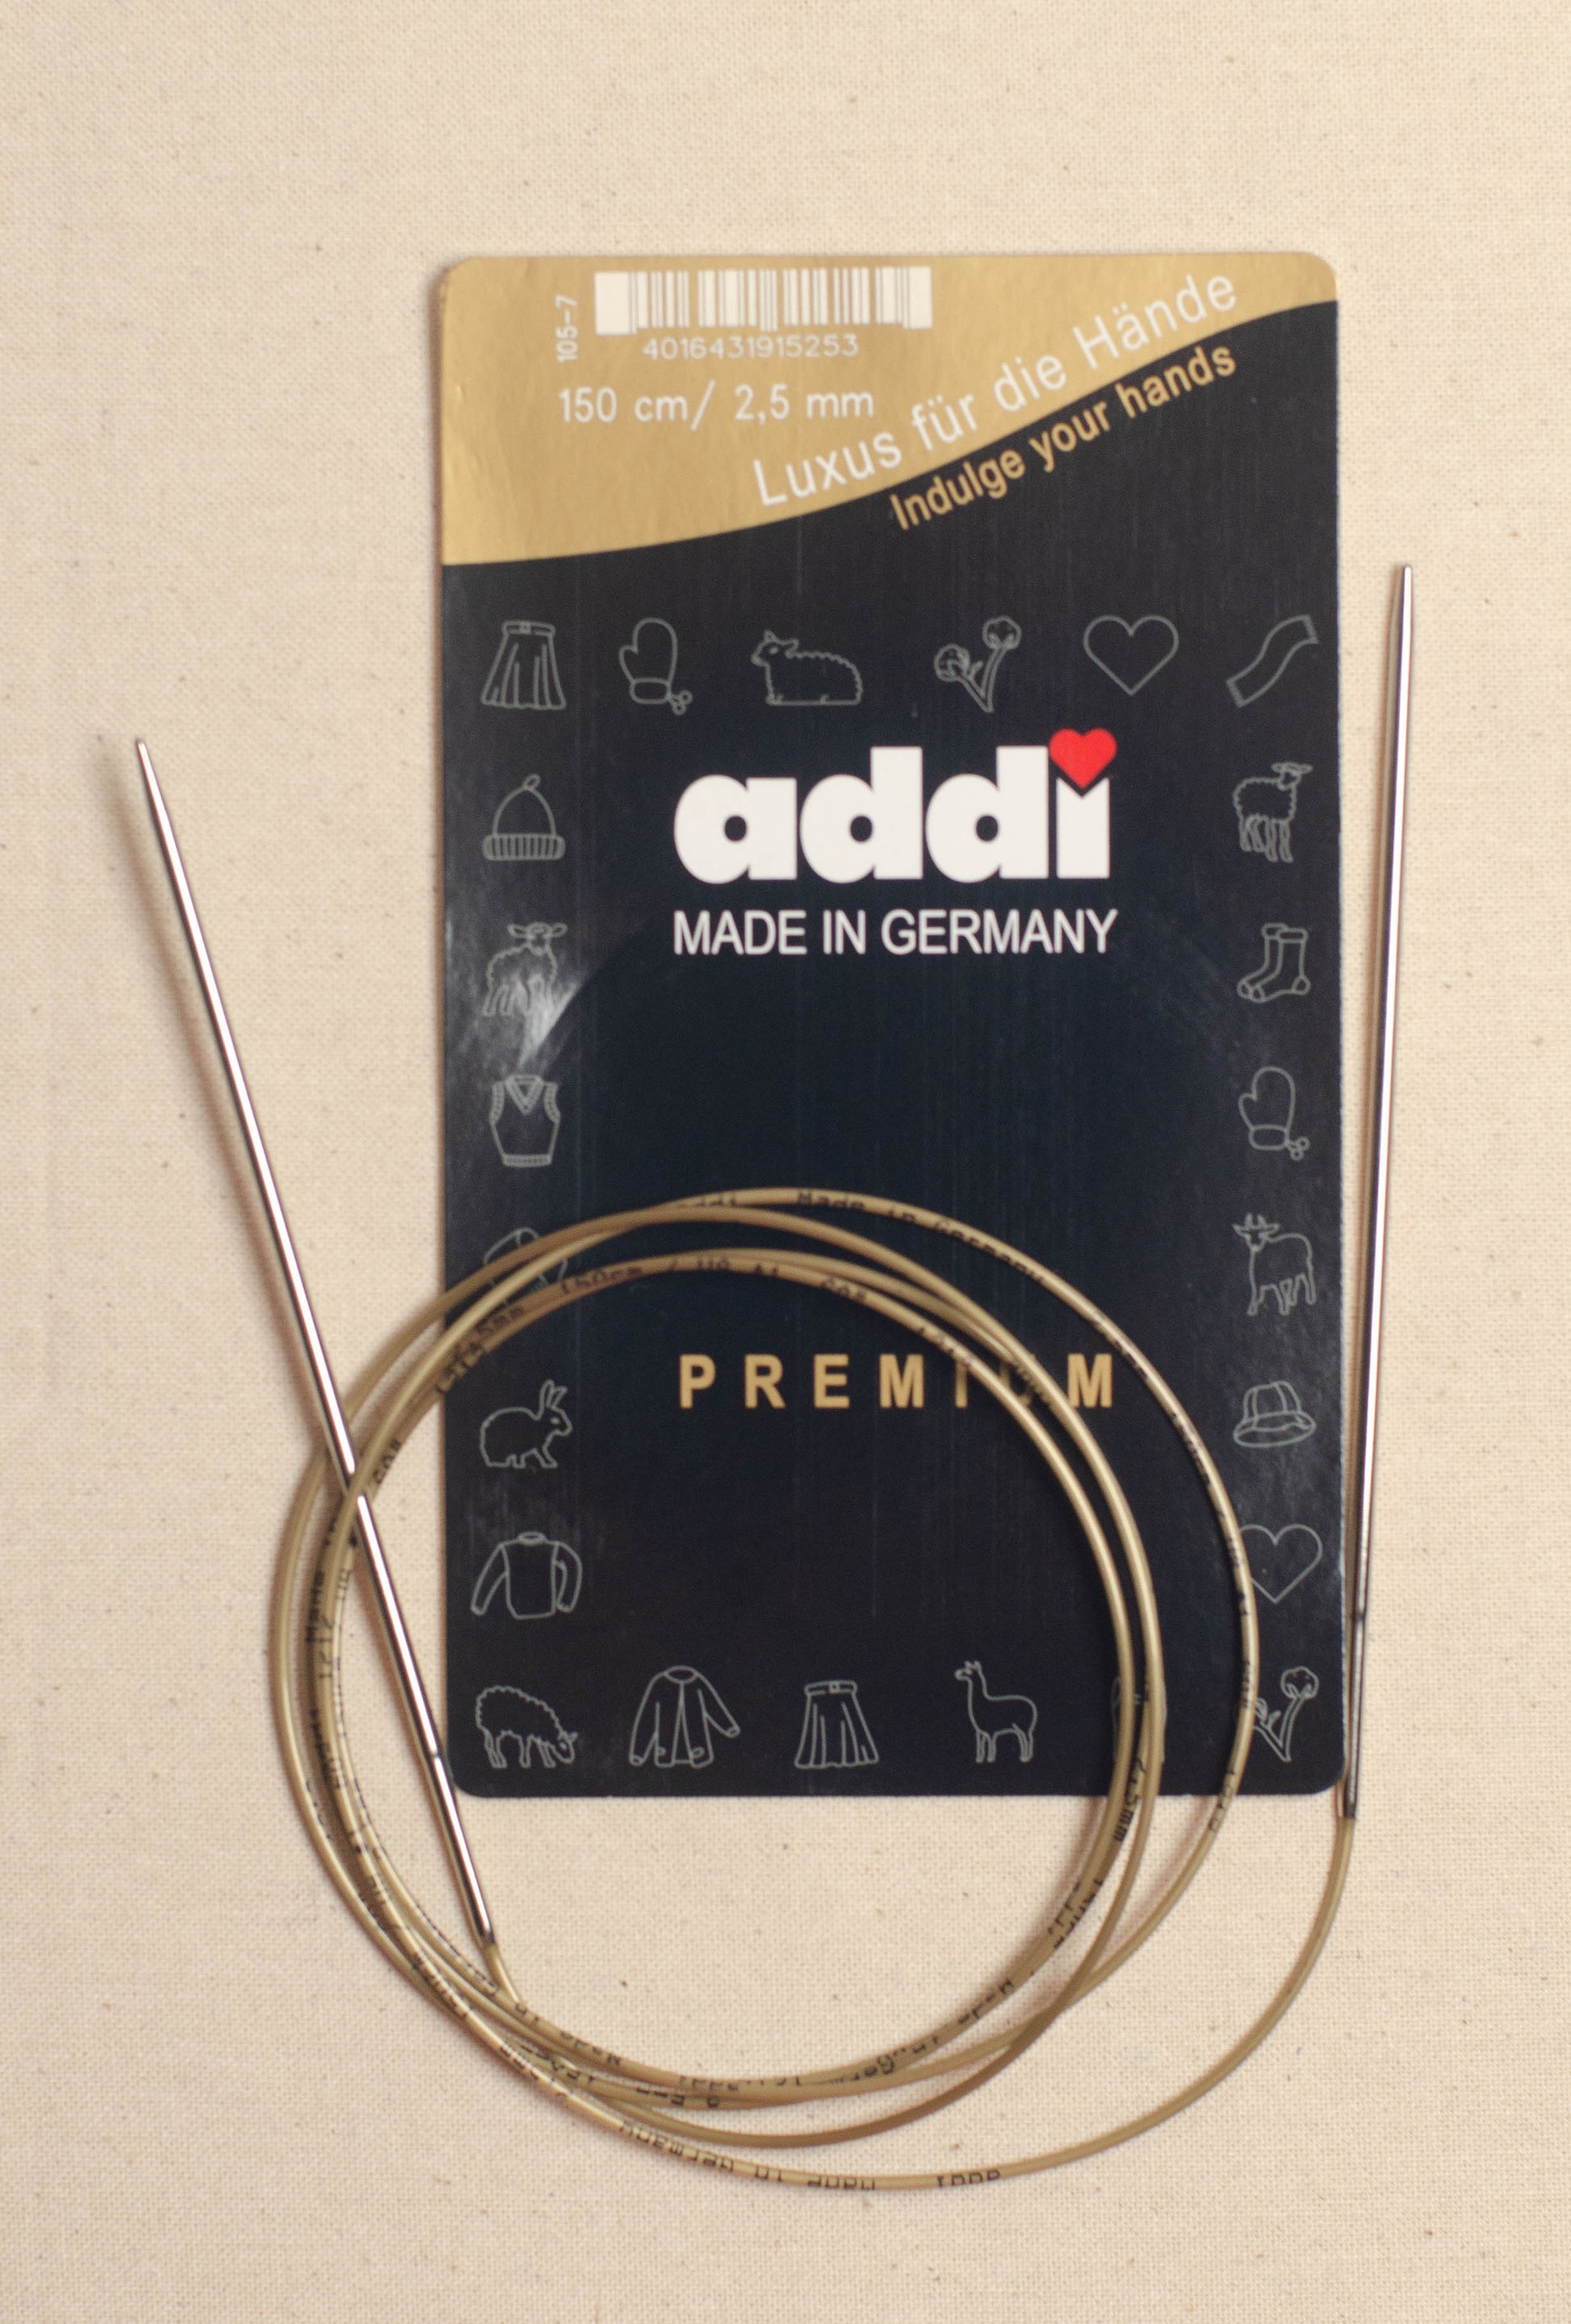 Addi 7mm 80cm Circular Knitting Needles - 105-7